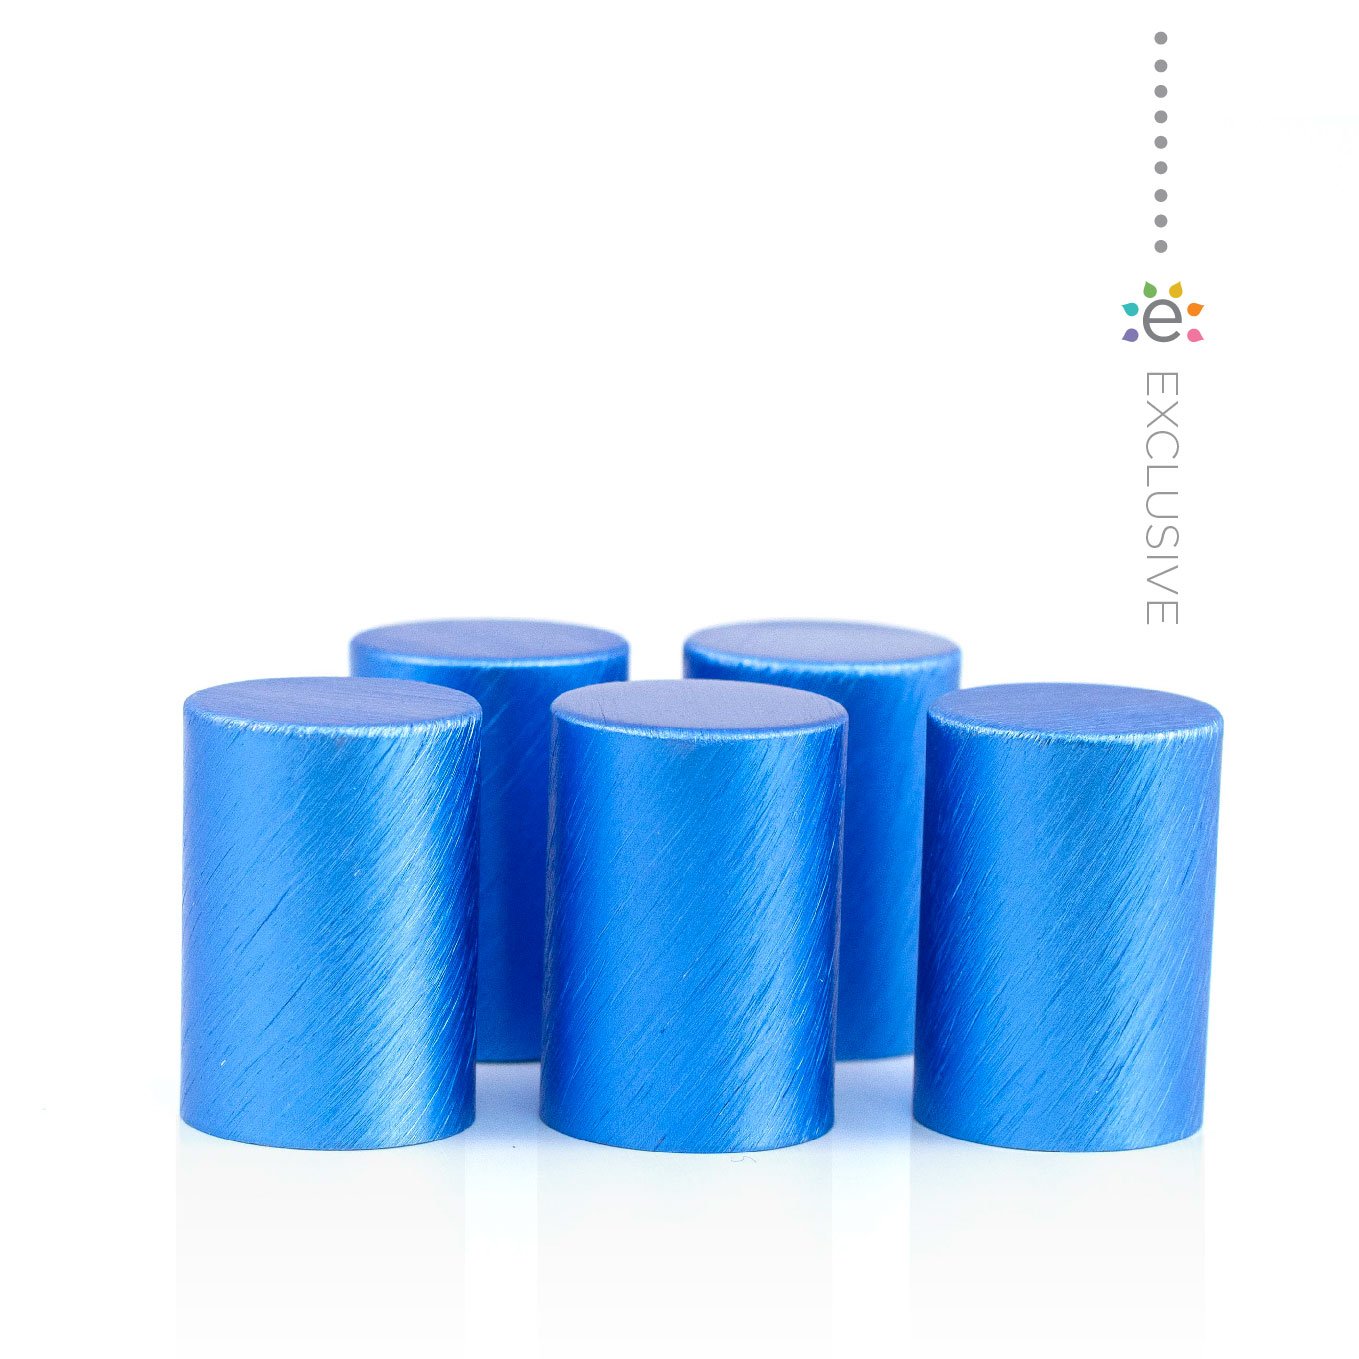 Fém kupakok (5 darab) Roll-on üveghengerhez, Kék színben